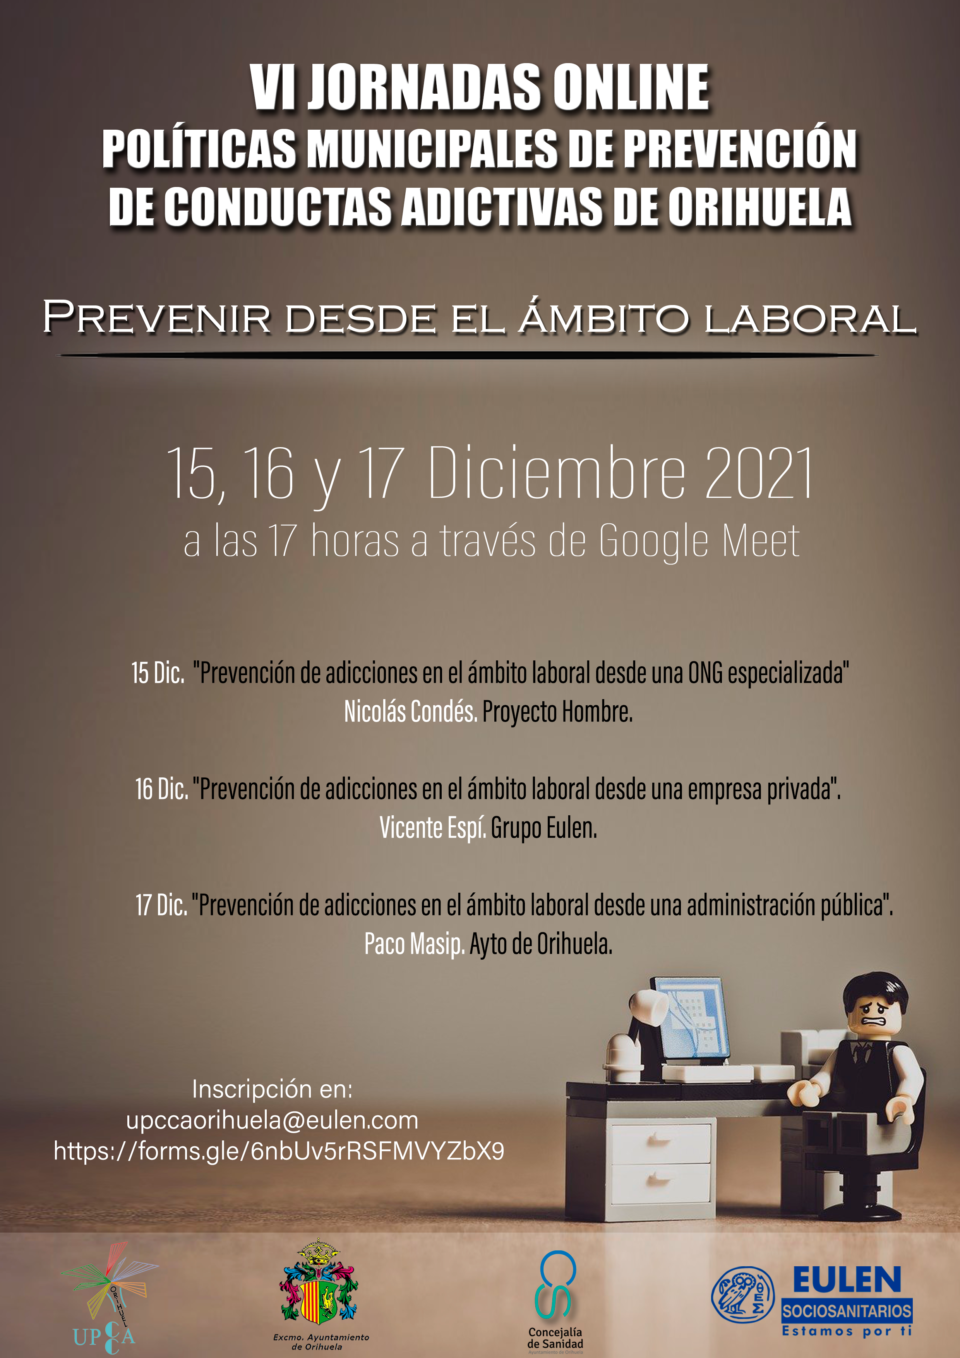 Jornadas online para prevenir conductas adictivas en Orihuela desde el ámbito laboral 6